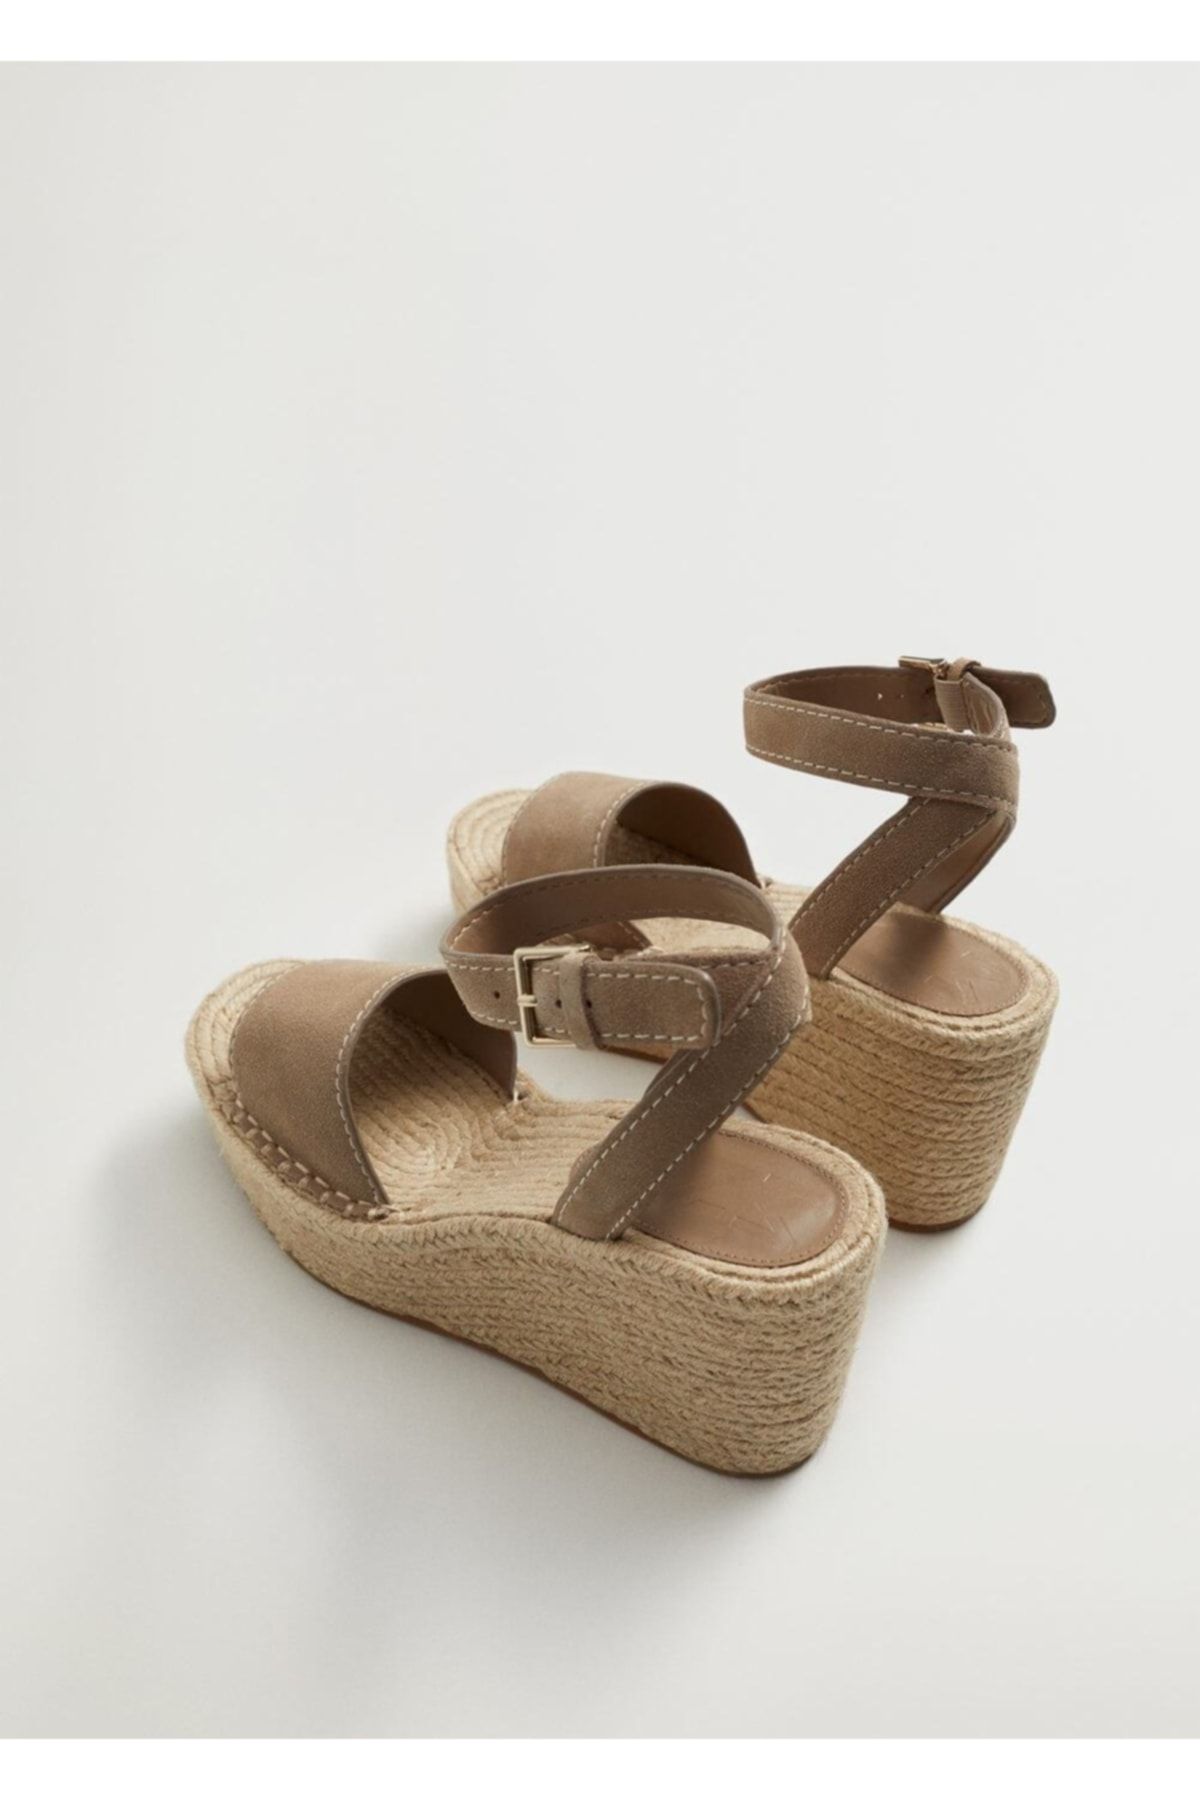 MANGO Kadın Açık/Pastel Kahverengi Dolgu Topuklu Deri Sandalet